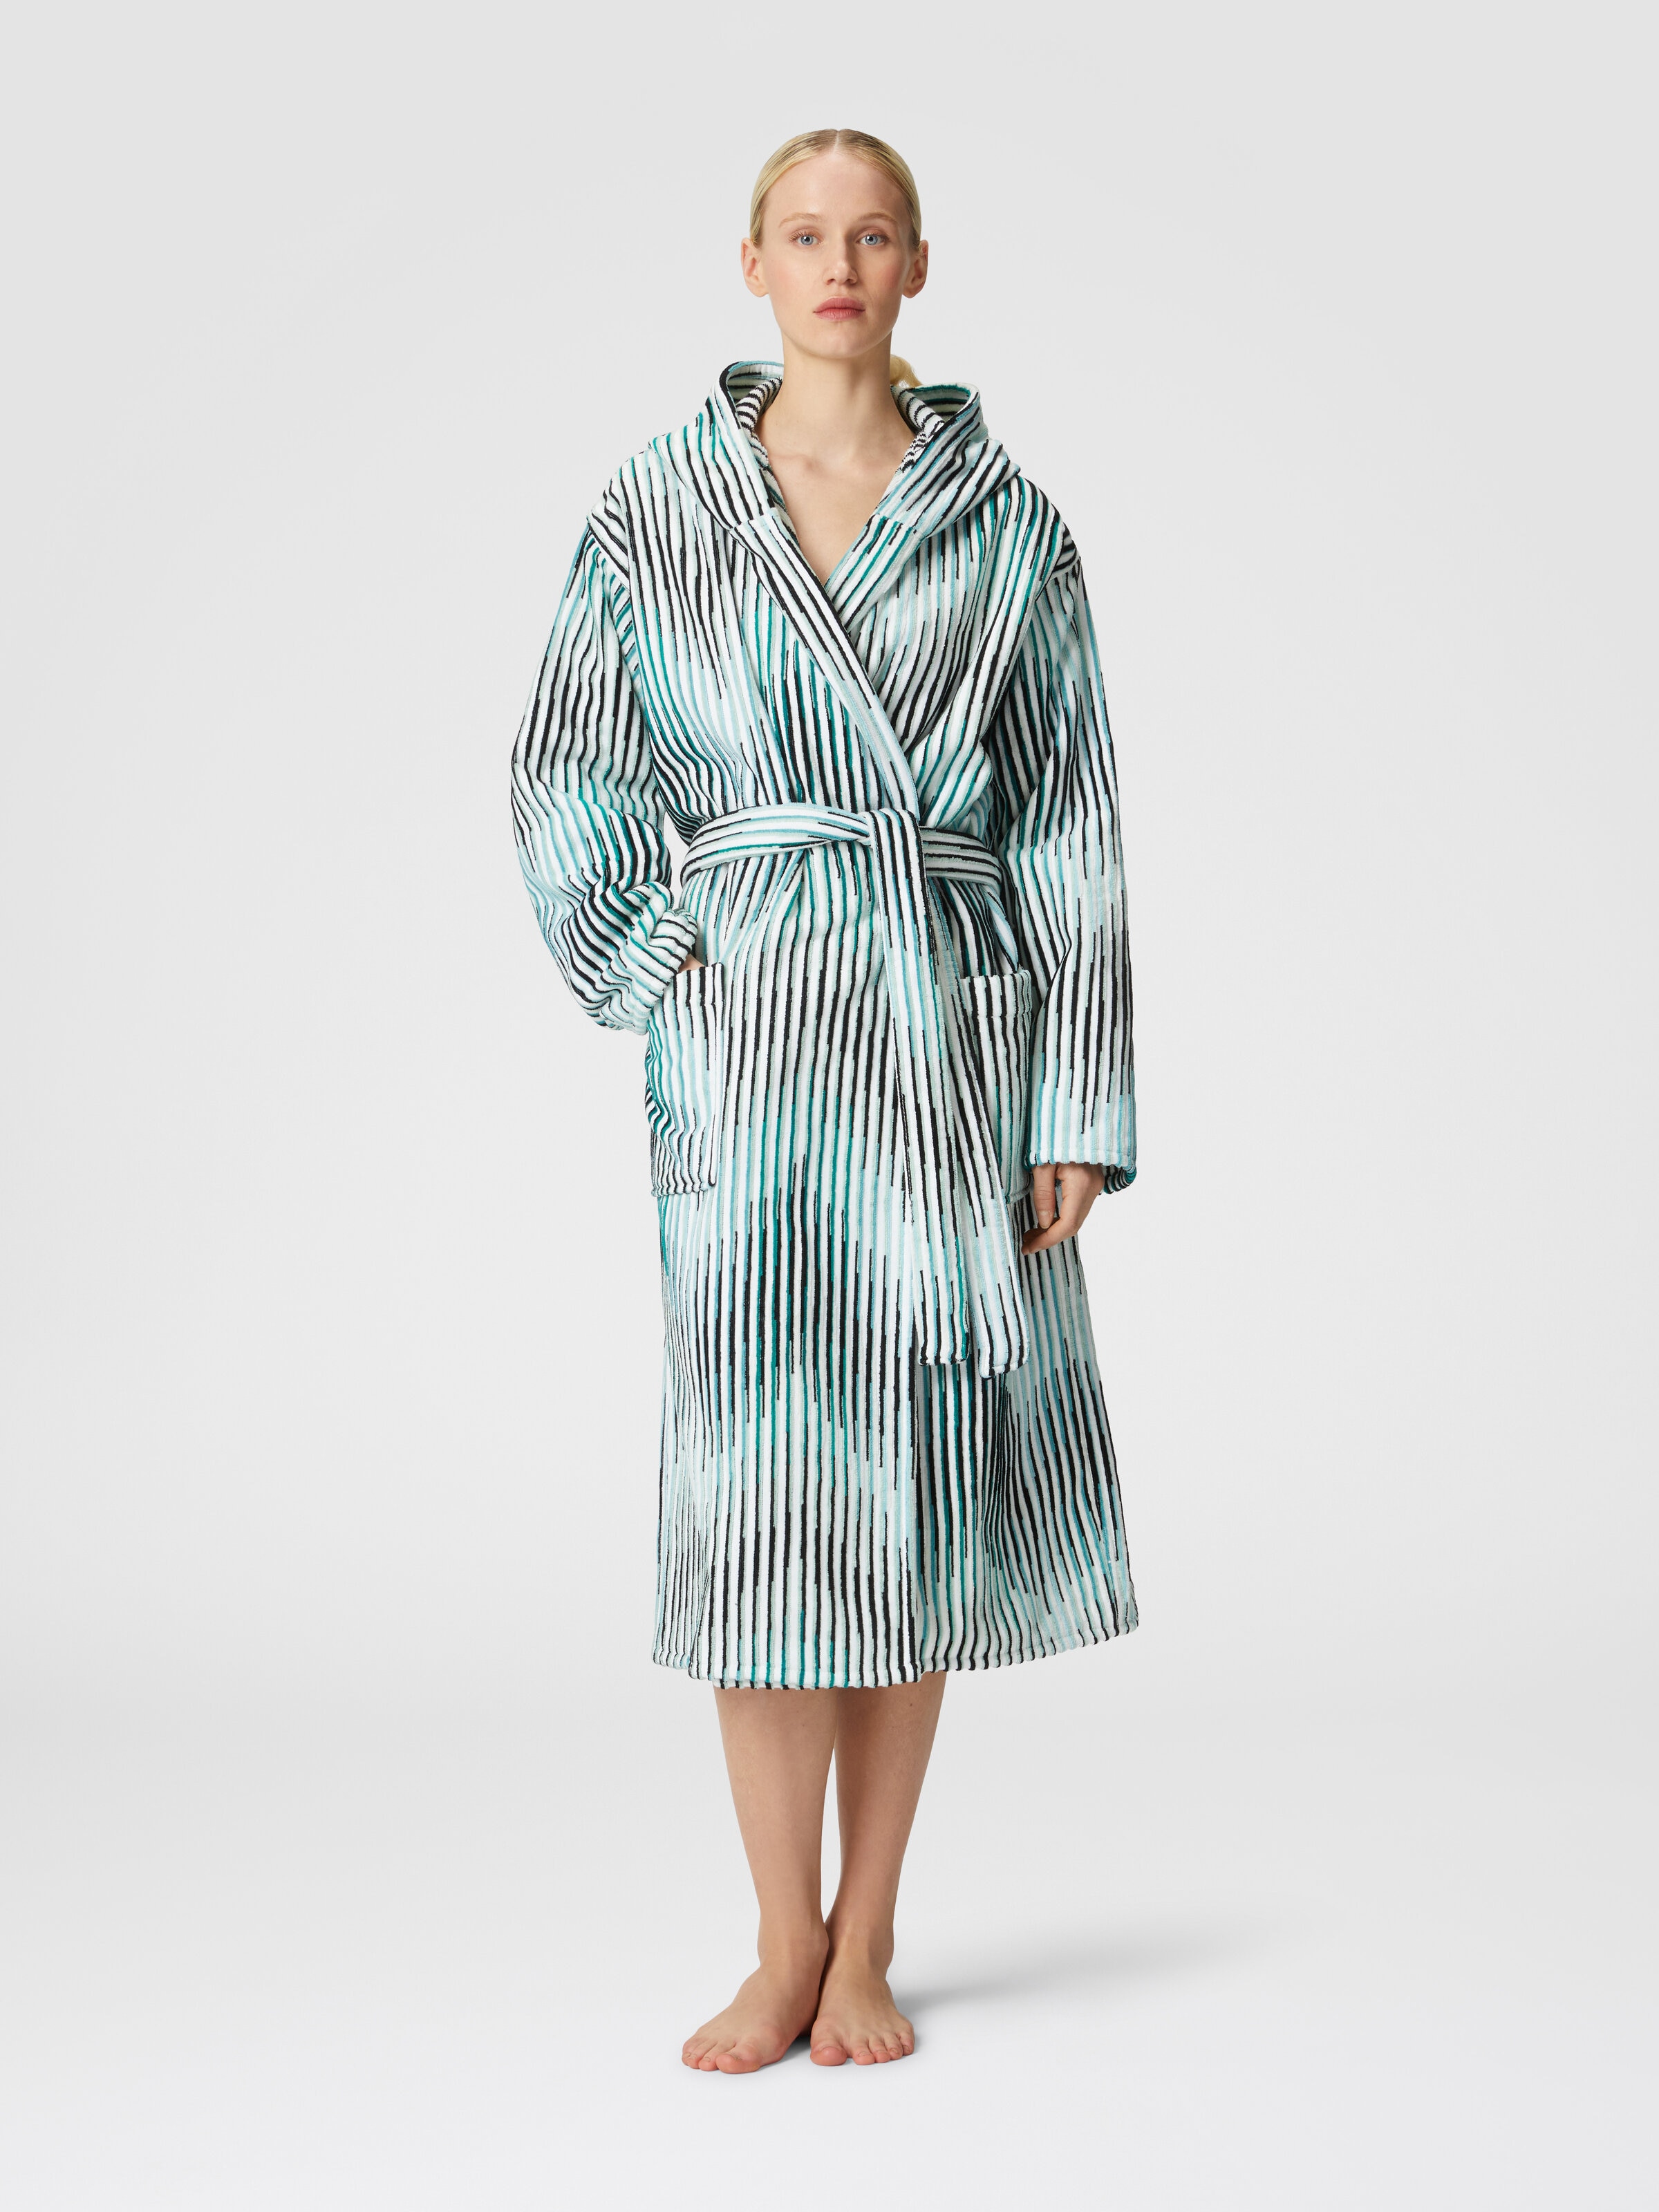 Arpeggio bathrobe in slub cotton terry, Turquoise  - 1